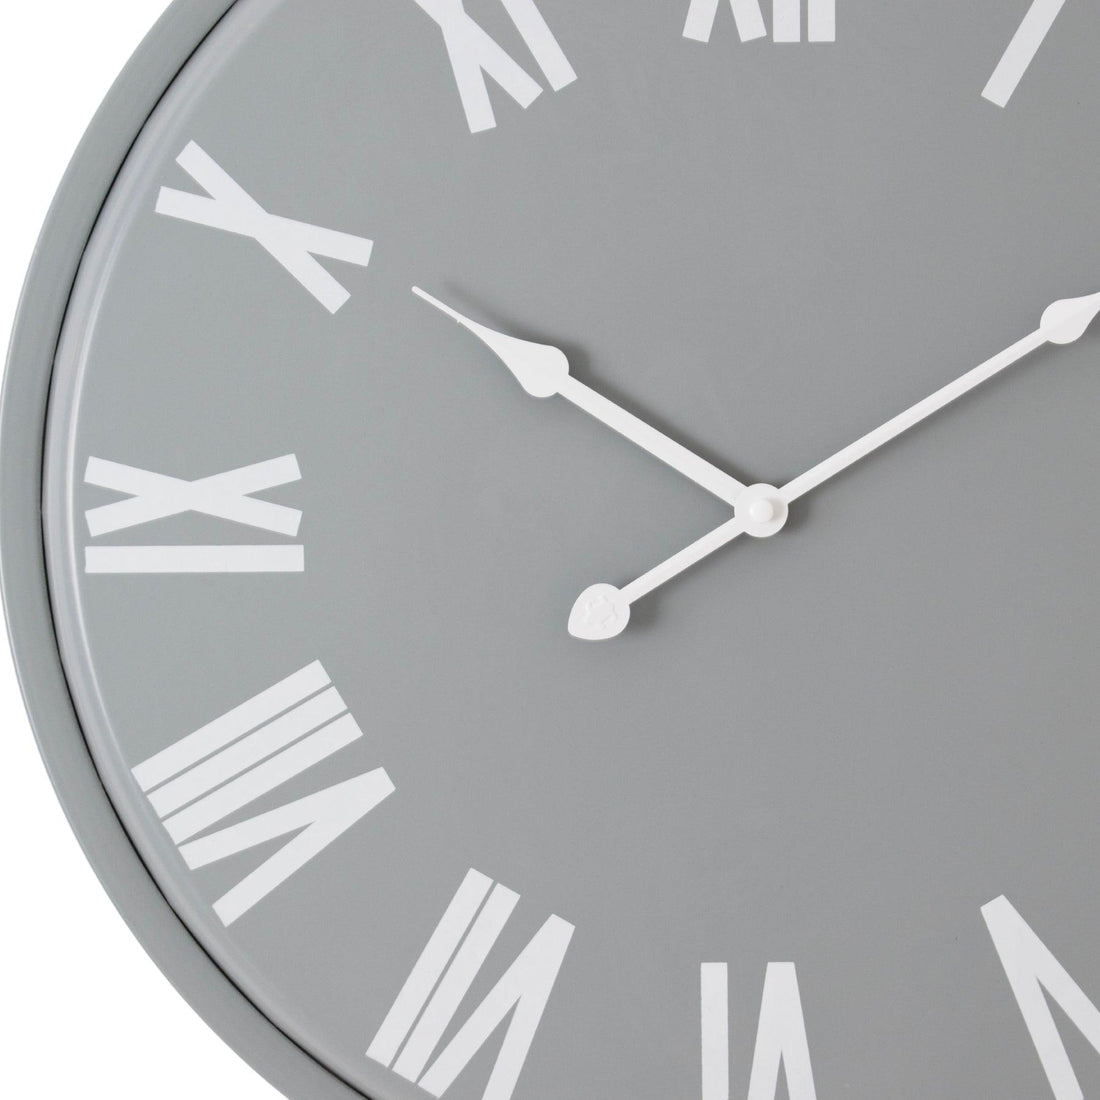 Rothay Wall Clock - £79.95 - Wall Clocks 